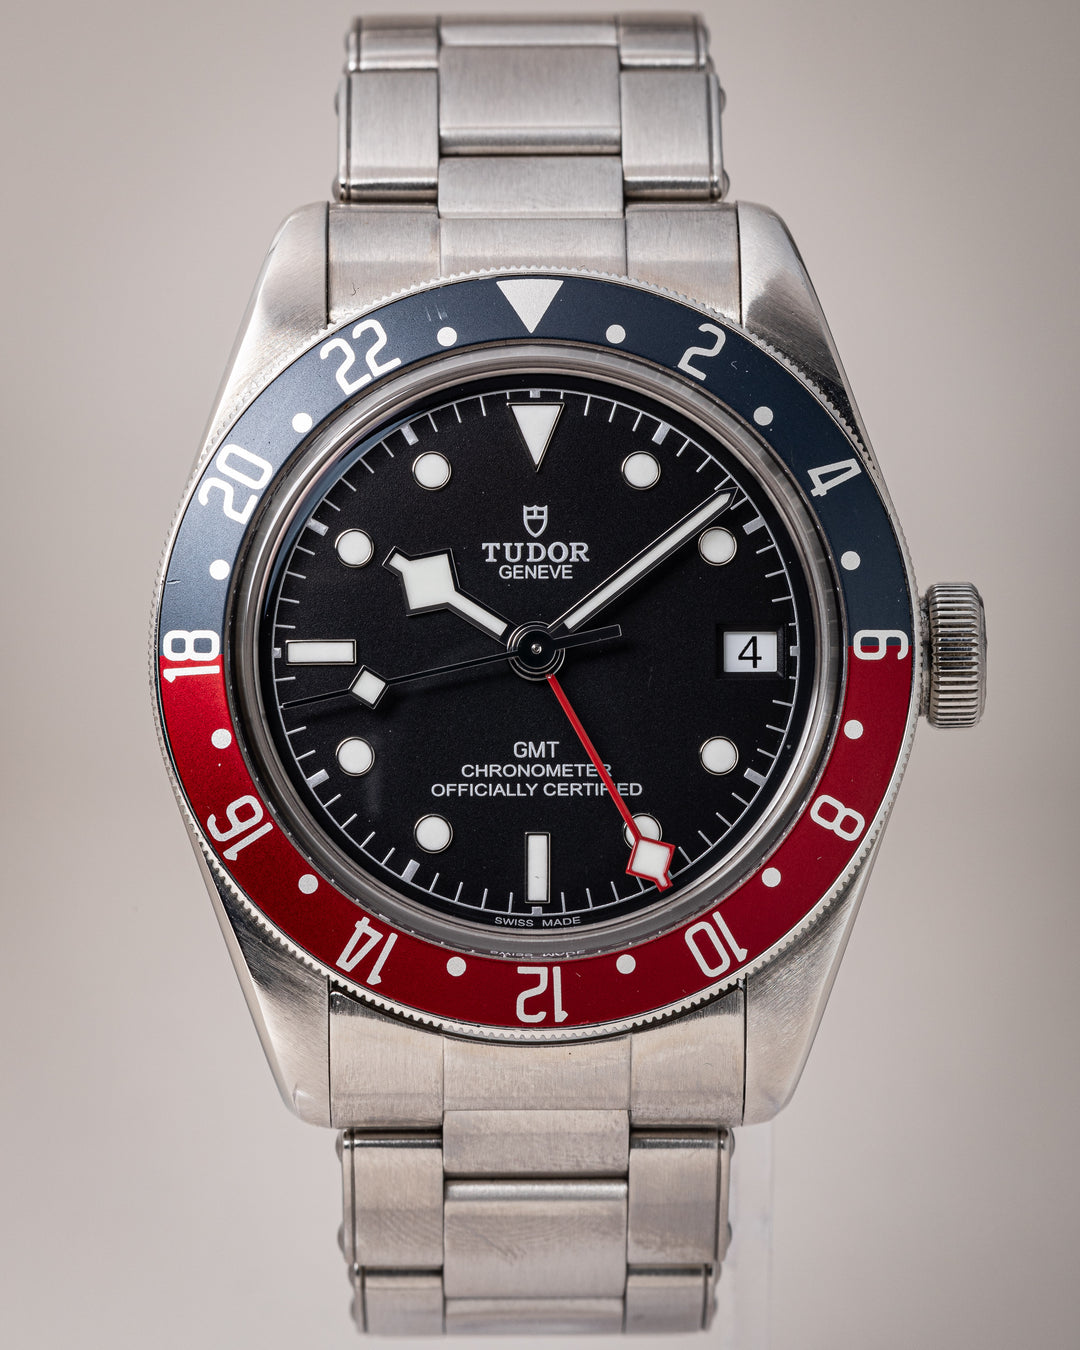 Tudor Stainless Steel Black Bay GMT (79830RB)